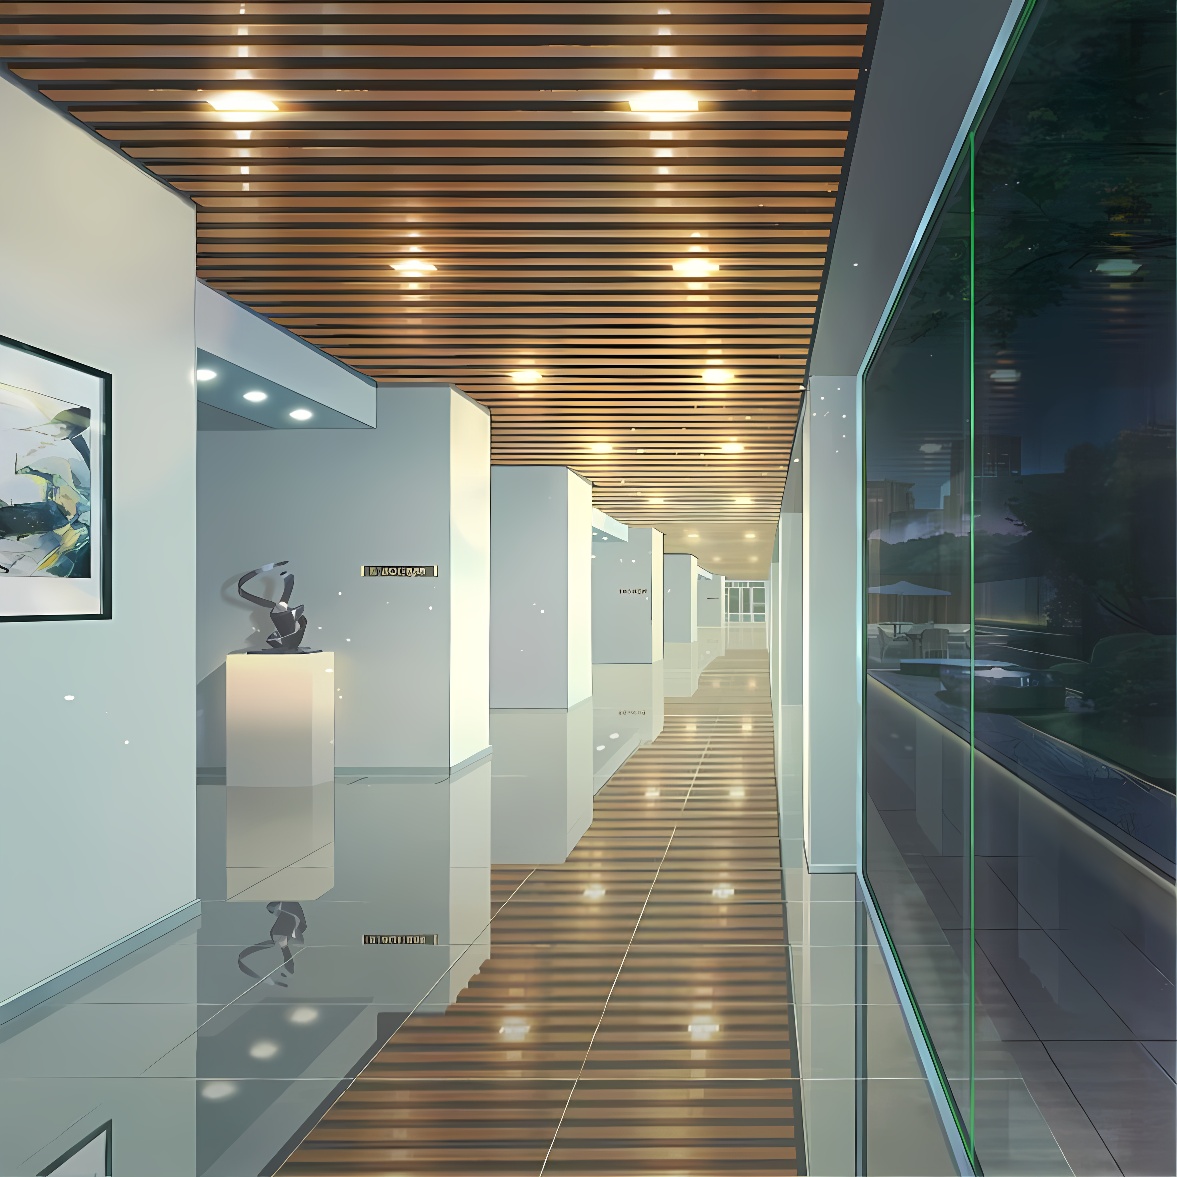 这是一条现代风格的室内长廊，墙上挂着艺术画作，地面铺设有瓷砖，顶部木质条板天花板上镶嵌着灯光。